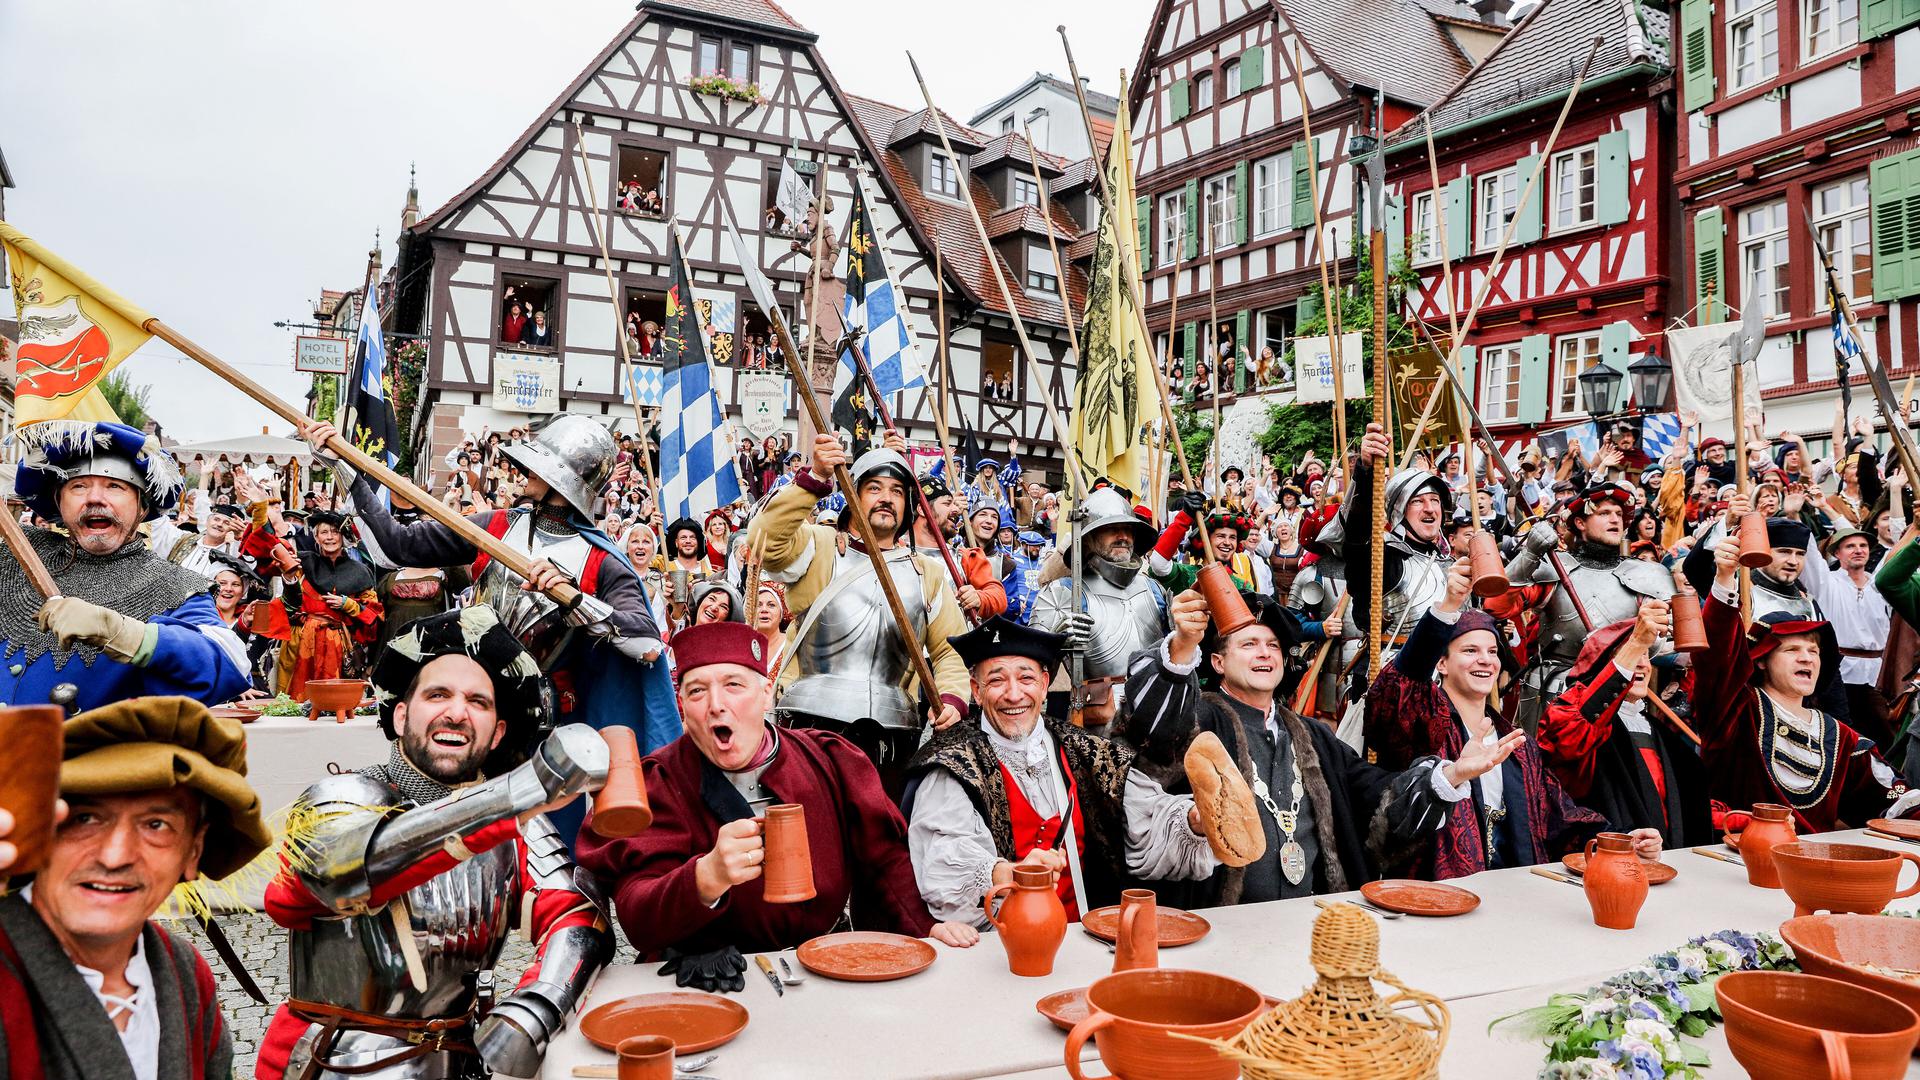 Jubel ohne Ende: In Bretten, nein: Brettheim, wird das Mittelalter gefeiert. Besser geht's nicht!